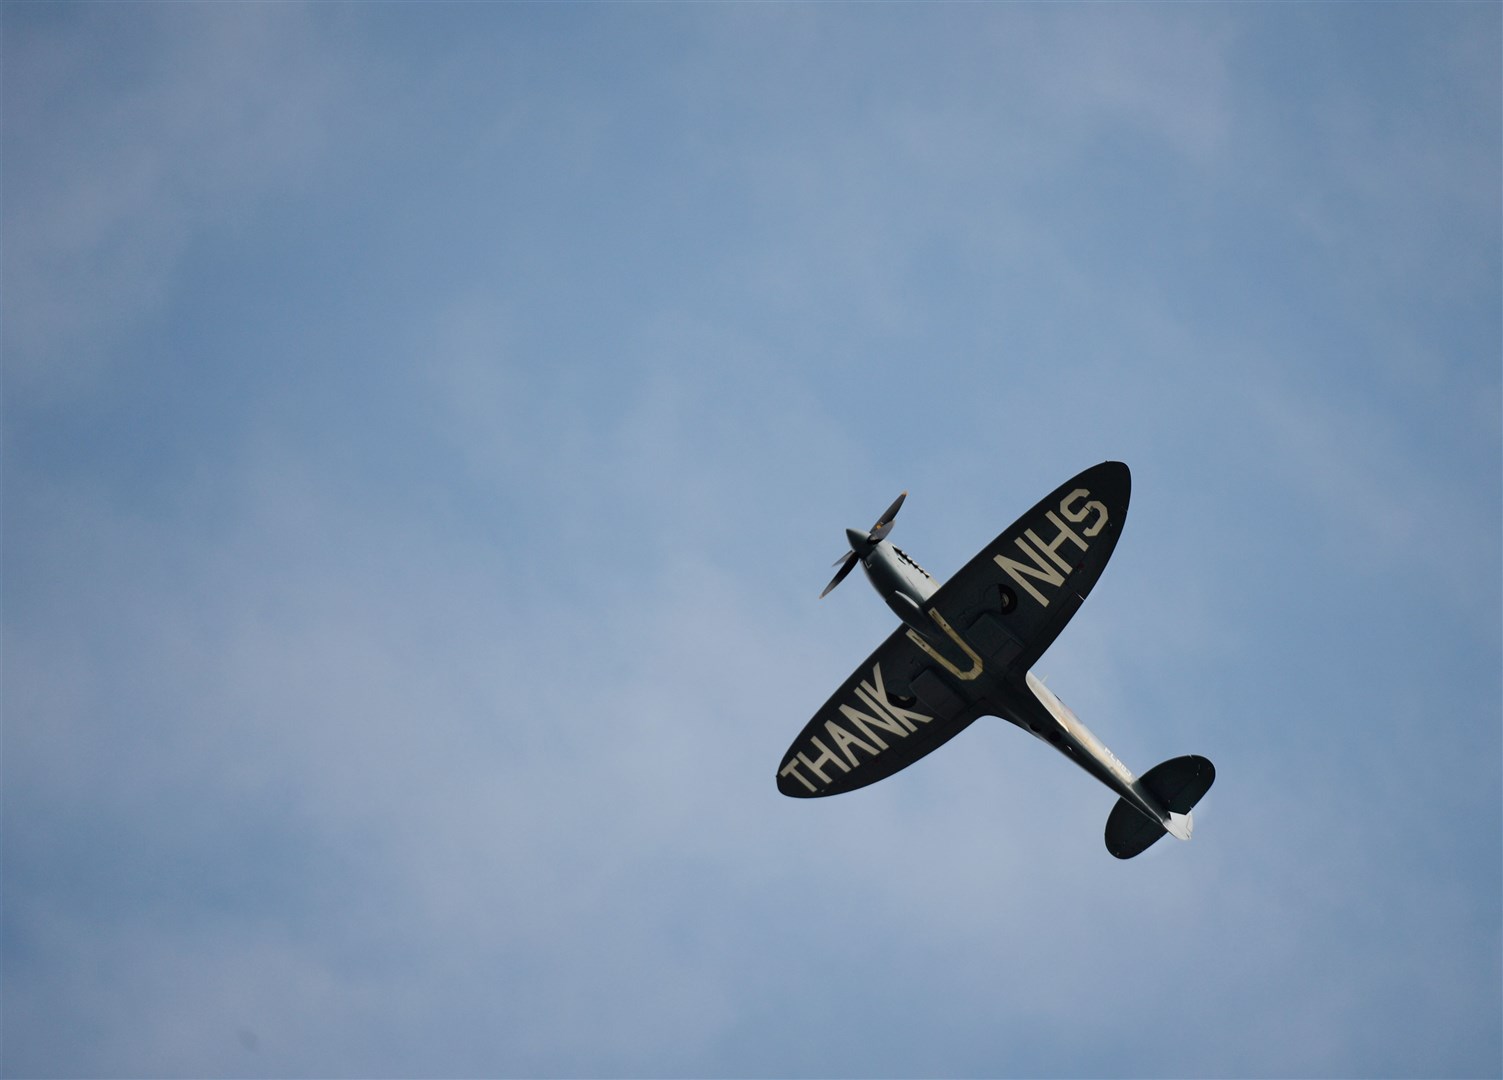 The Spitfire flys over Dr Gray's Hospital. Picture: Daniel Forsyth